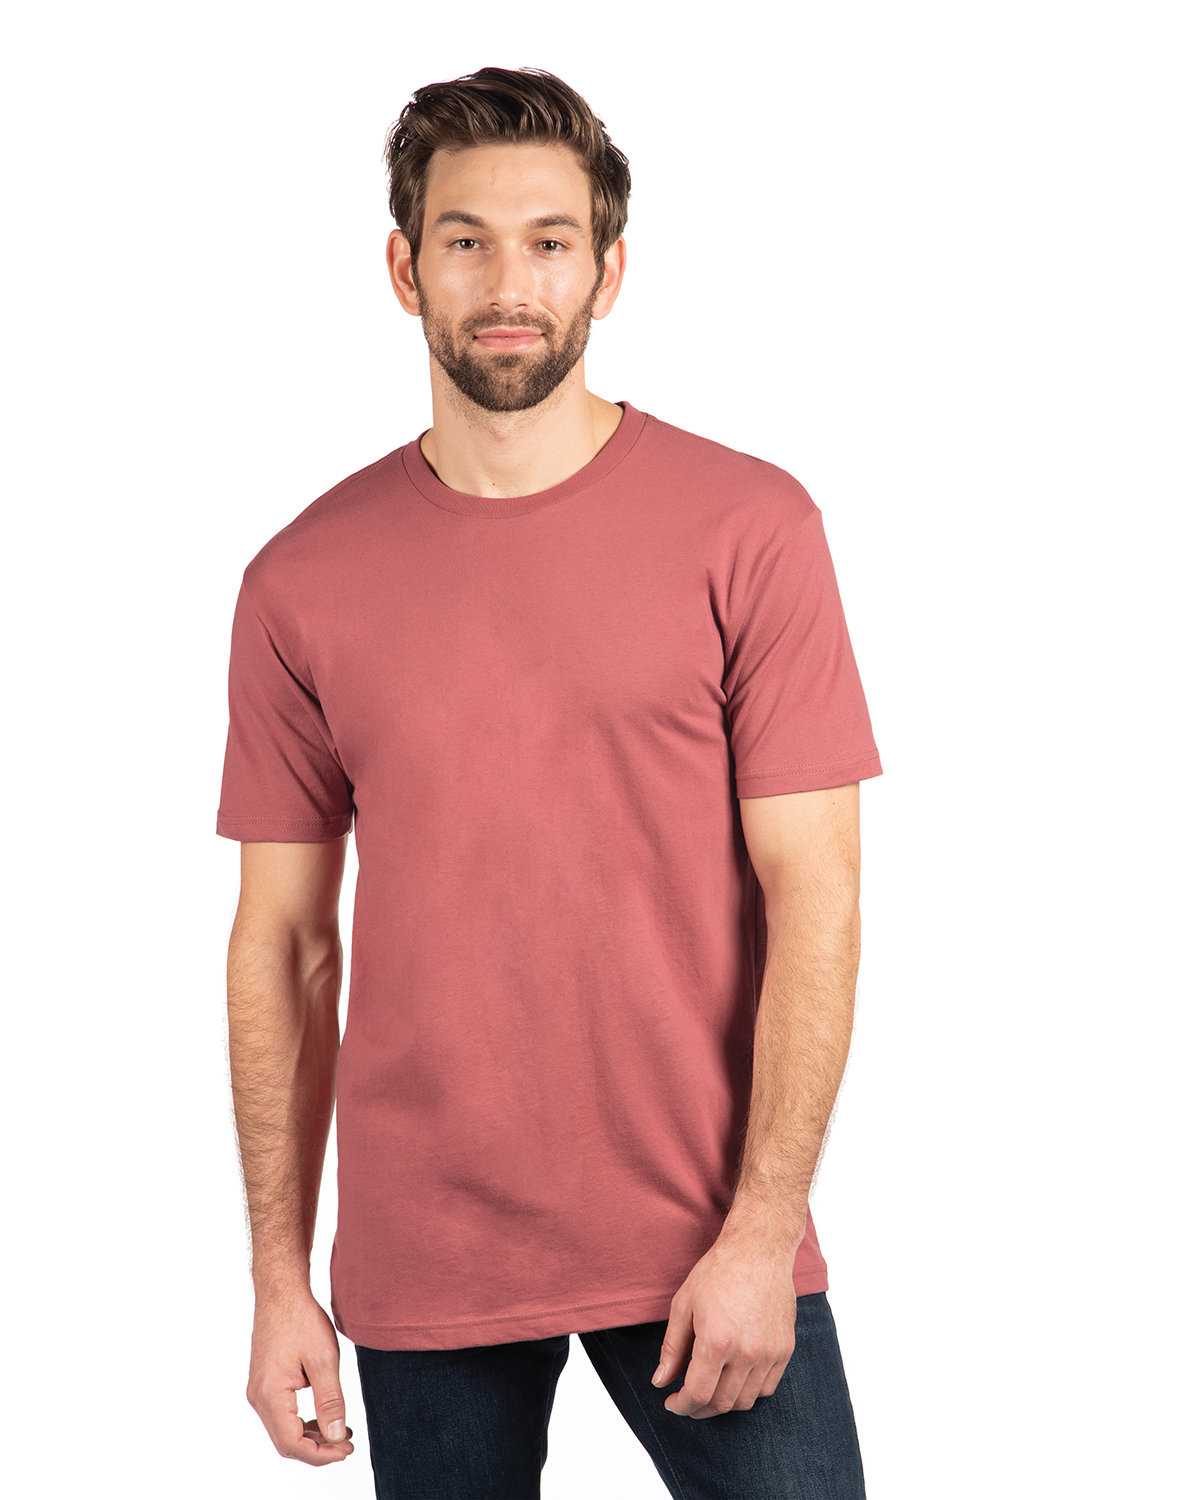 Next Level Unisex Cotton T-Shirt MAUVE 